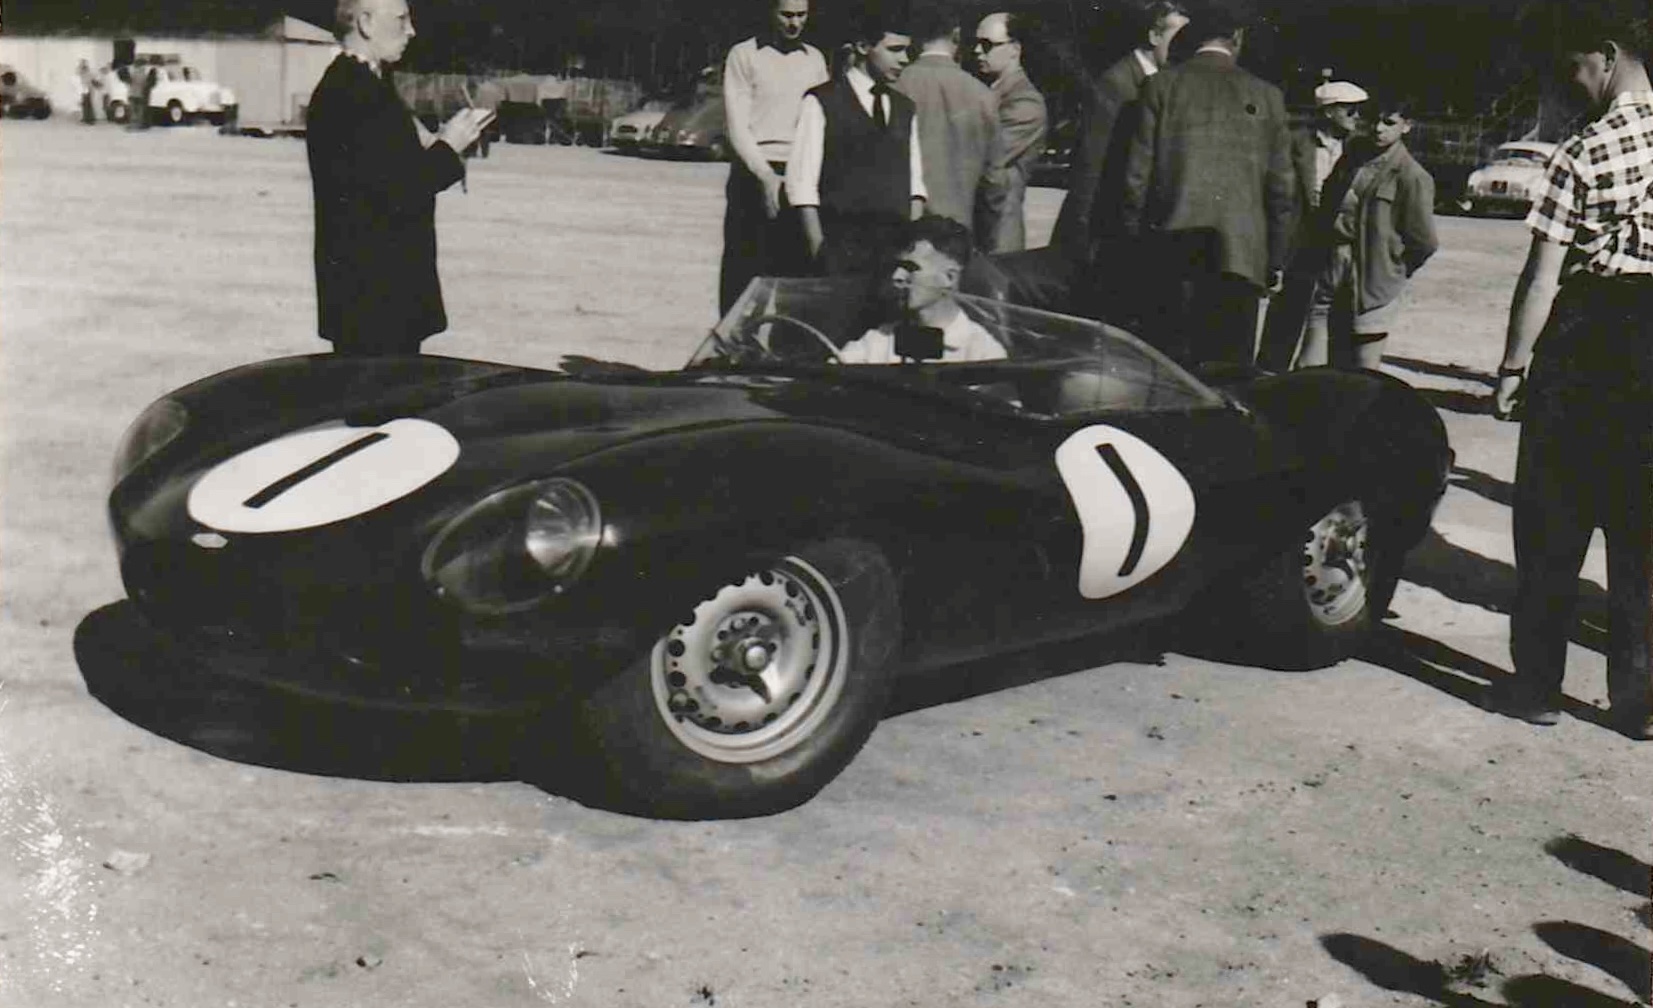 Le Mans Scrutineering 1958